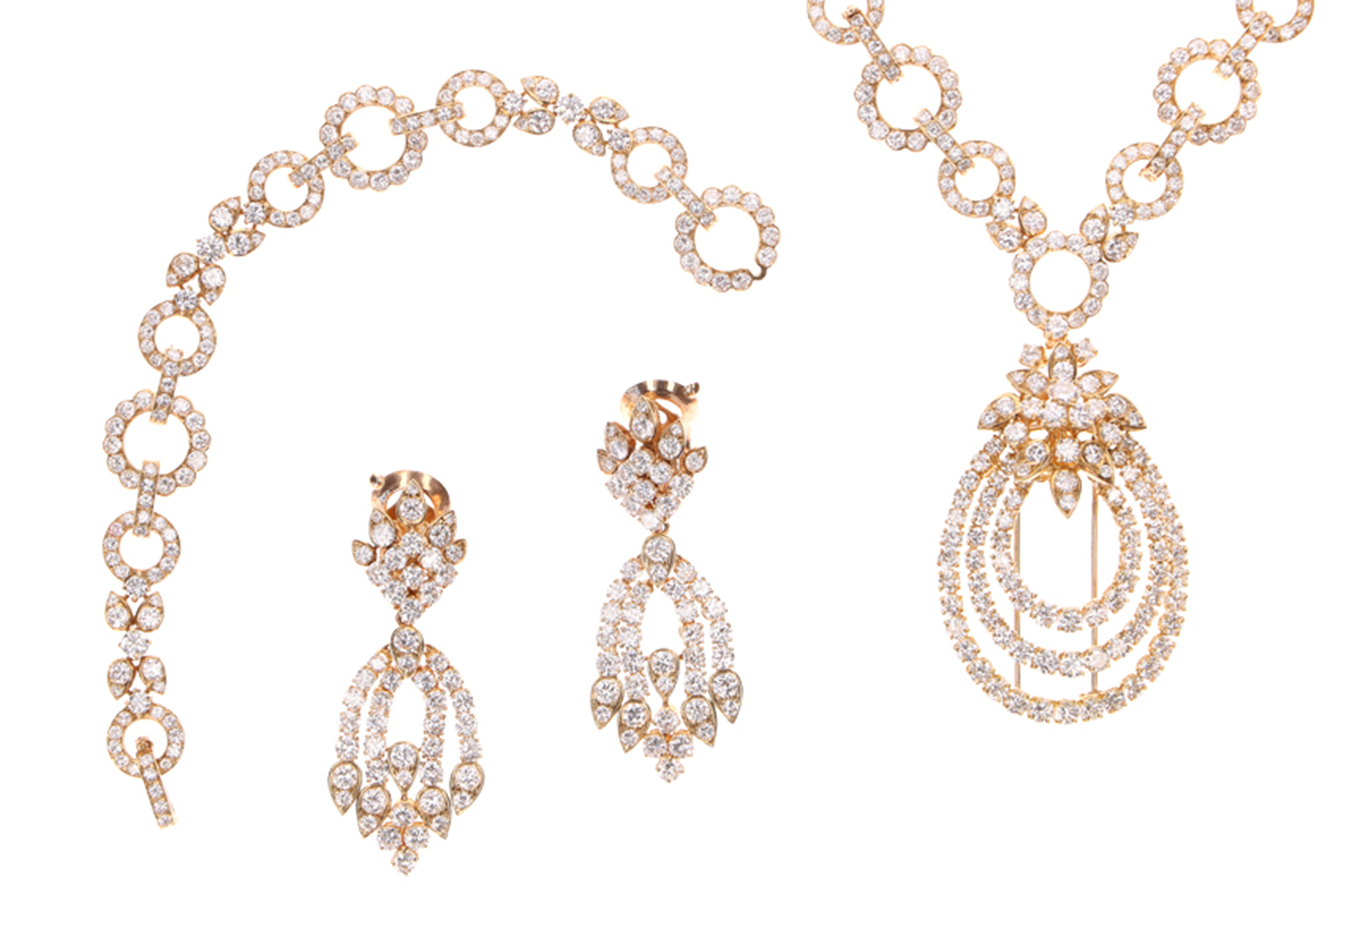 Juwelen - van Cleef & Arpels - Zeeuws Veilinghuis - Zeeland auctioneers